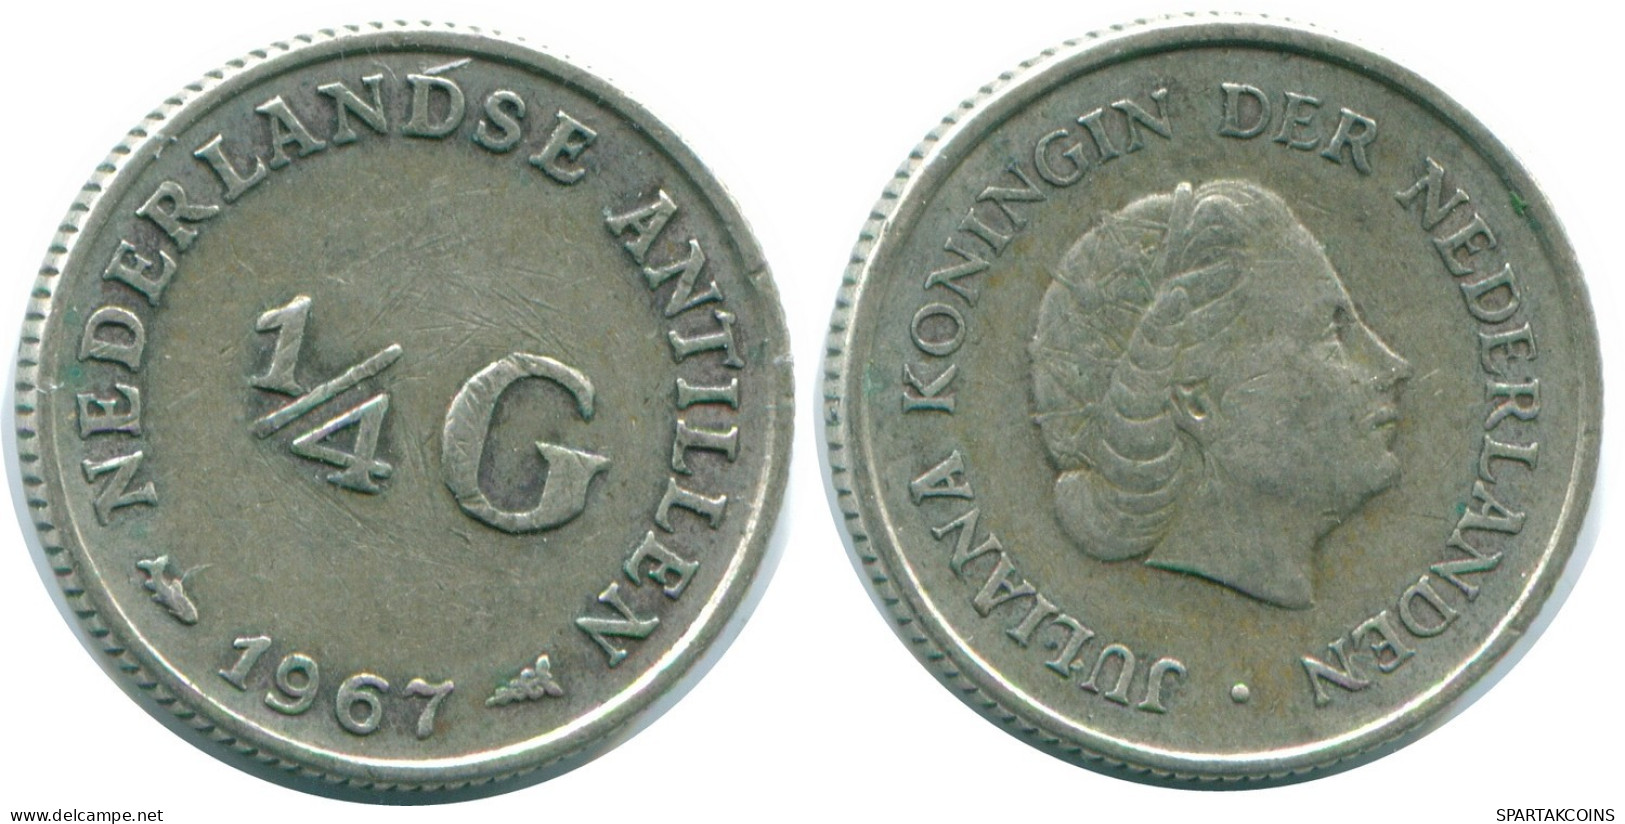 1/4 GULDEN 1967 NIEDERLÄNDISCHE ANTILLEN SILBER Koloniale Münze #NL11582.4.D.A - Antillas Neerlandesas